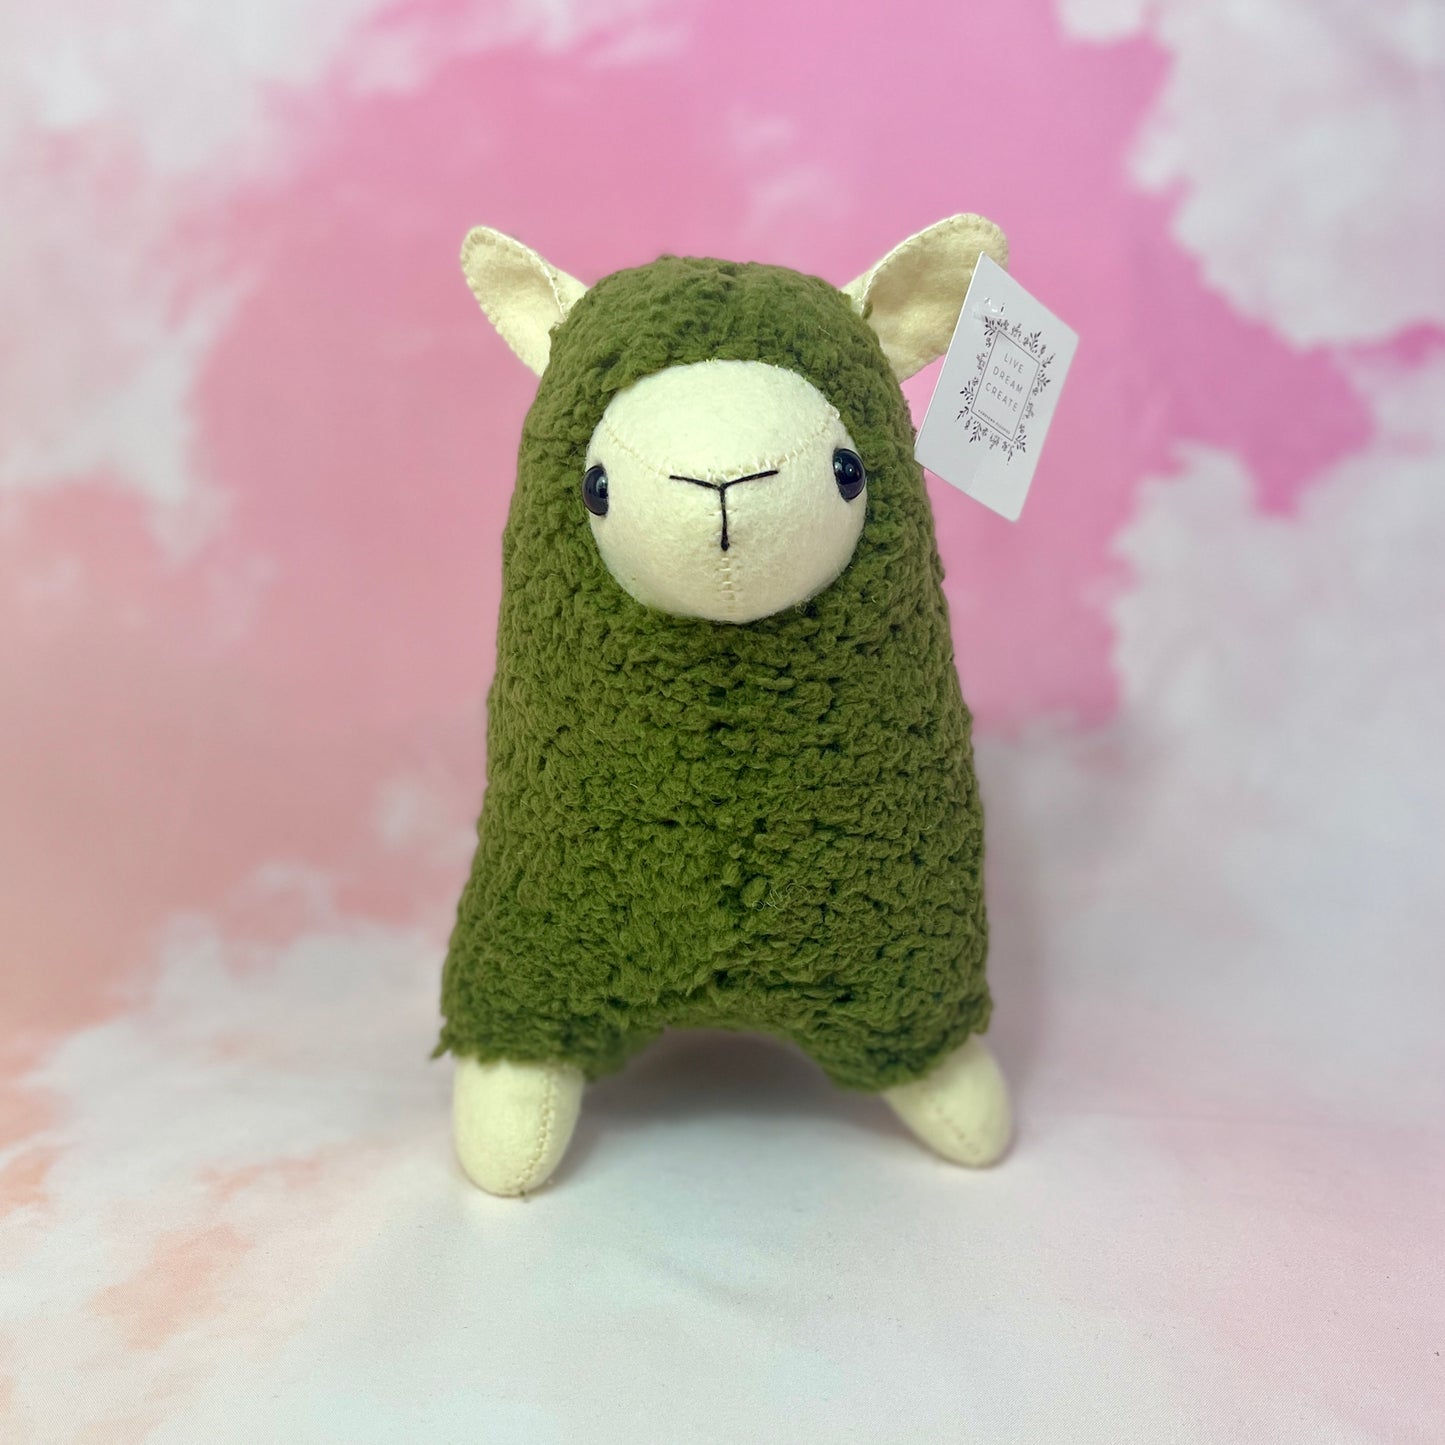 Fluffy Llama or Alpaca Plush